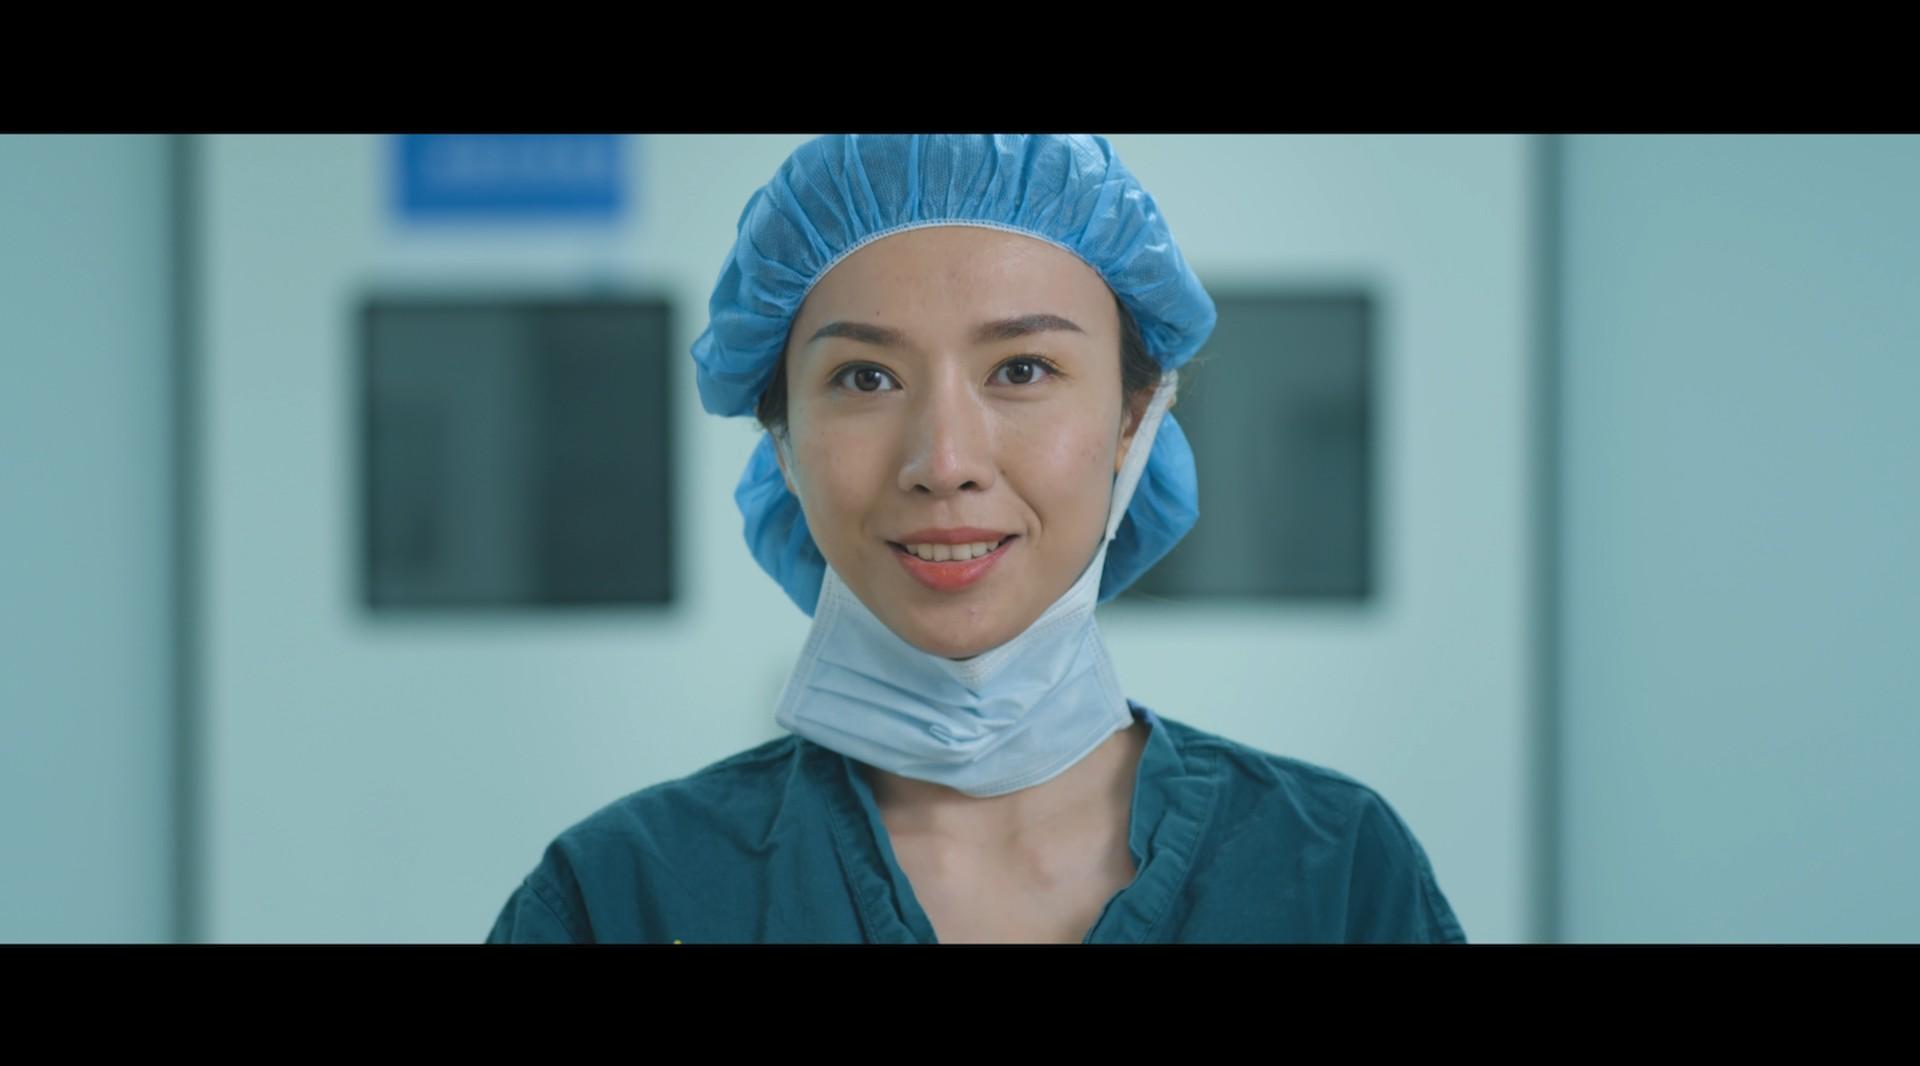 重庆首届医师节短片《每一个微笑都是因为被需要》